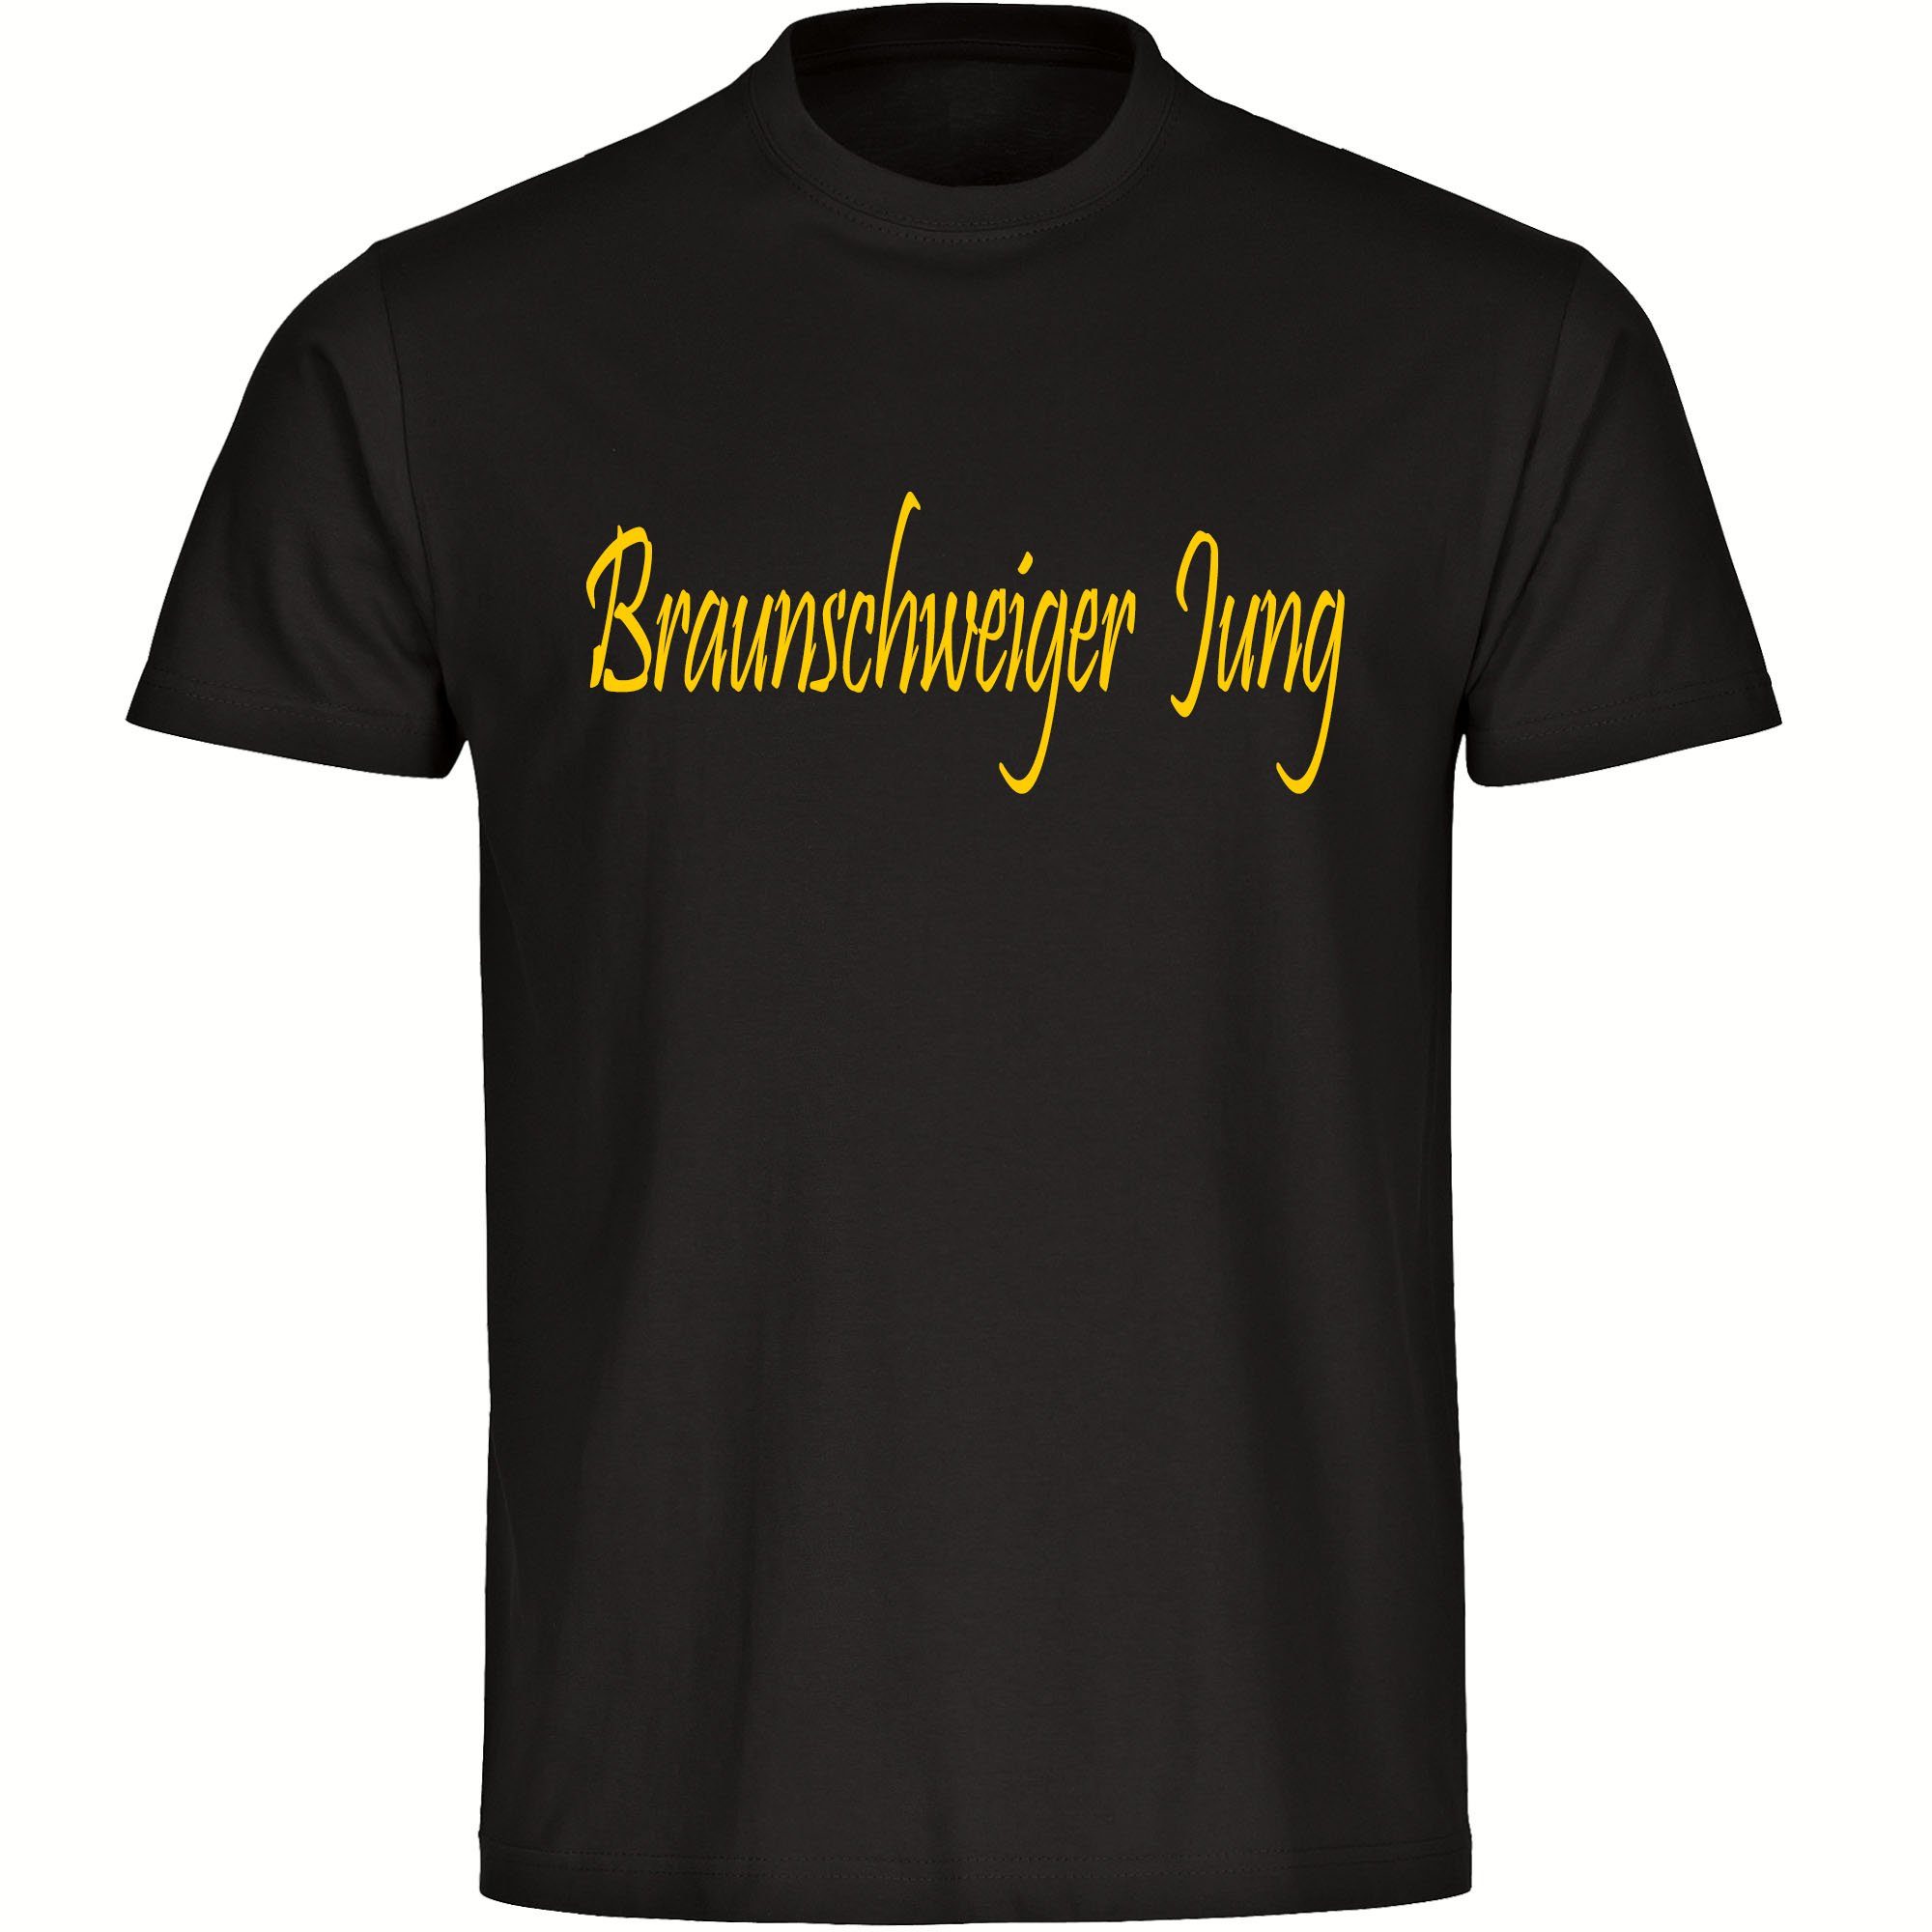 multifanshop T-Shirt Herren Braunschweig - Braunschweiger Jung - Männer